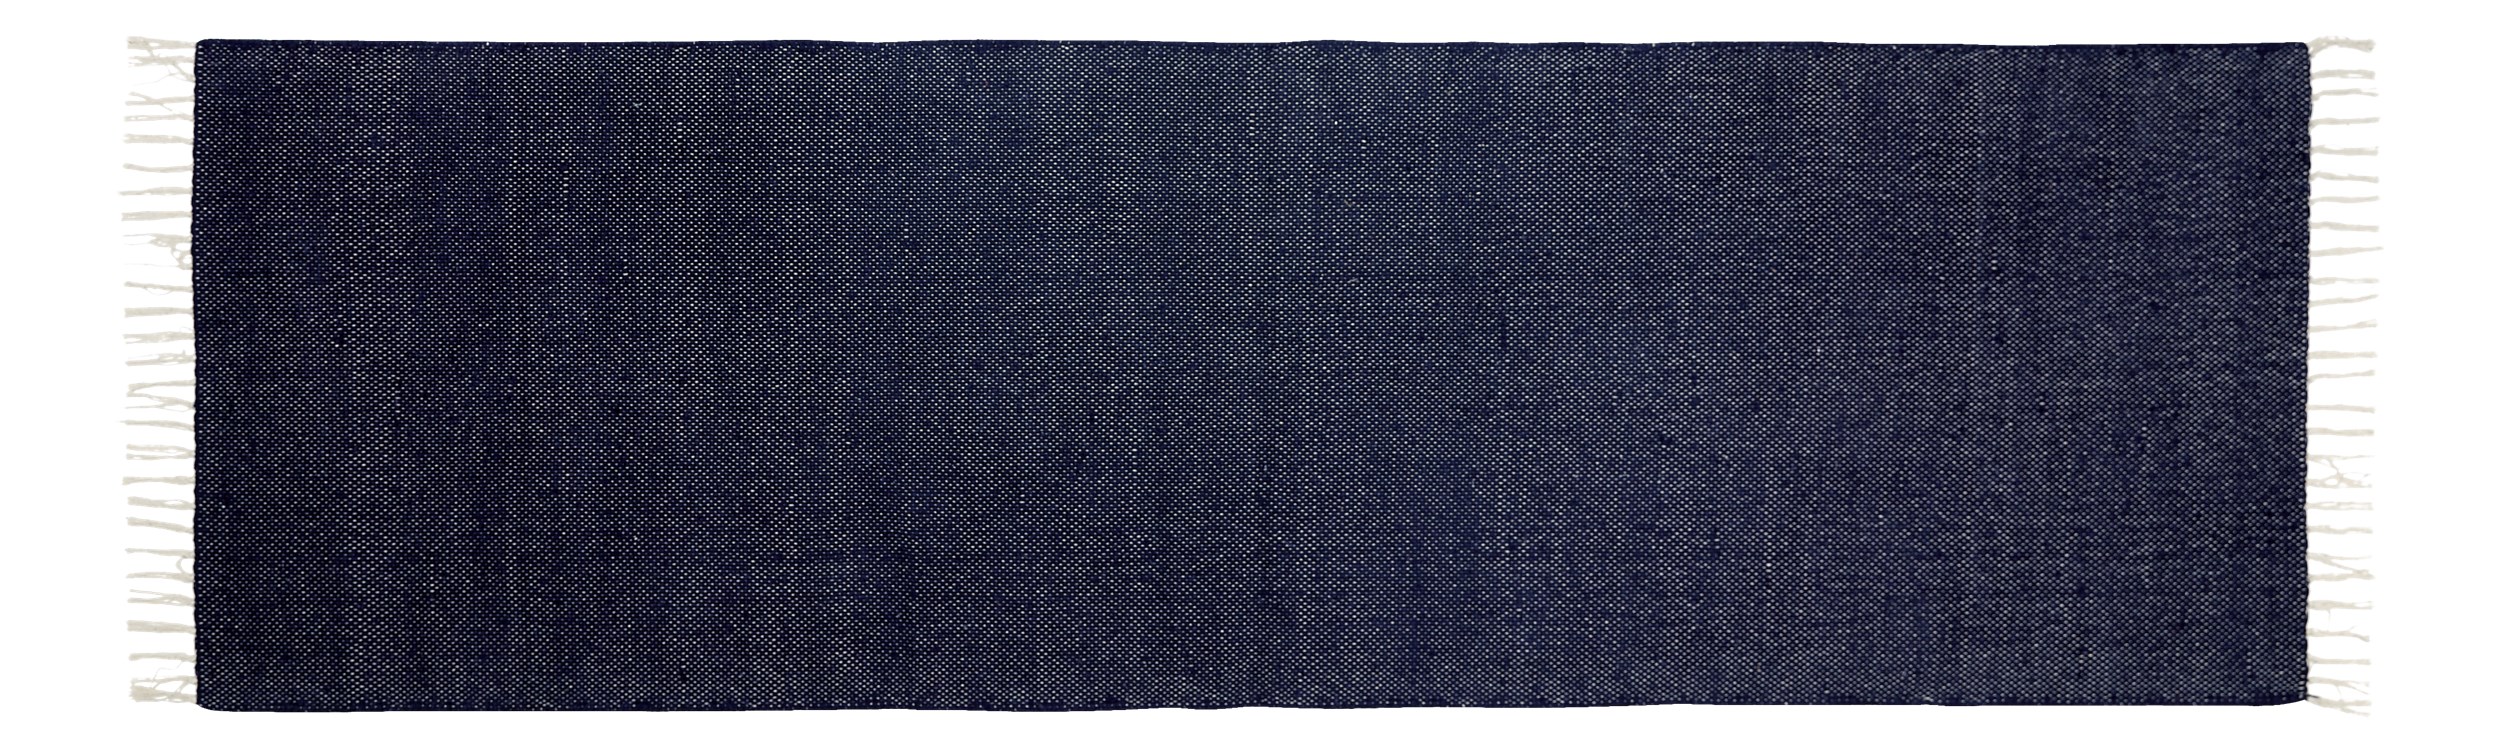 Joye Tæppeløber 80 x 250 cm - Mørkeblå bomuld